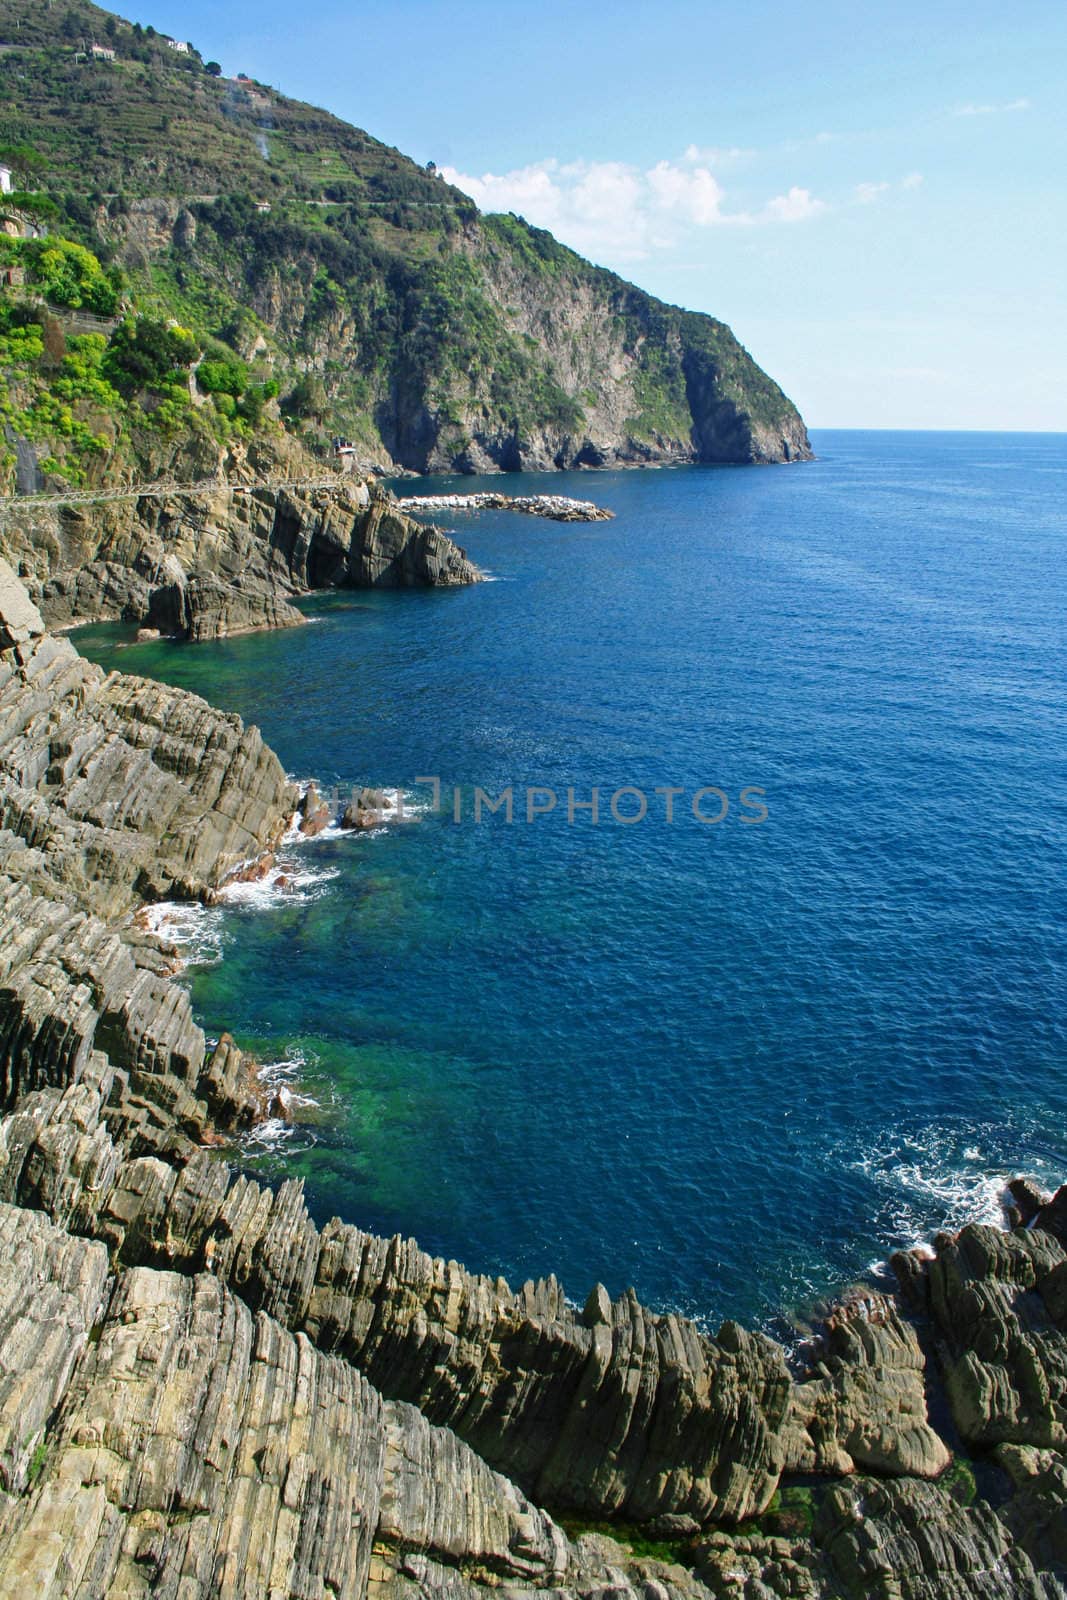 Italy. Cinque Terre coastline